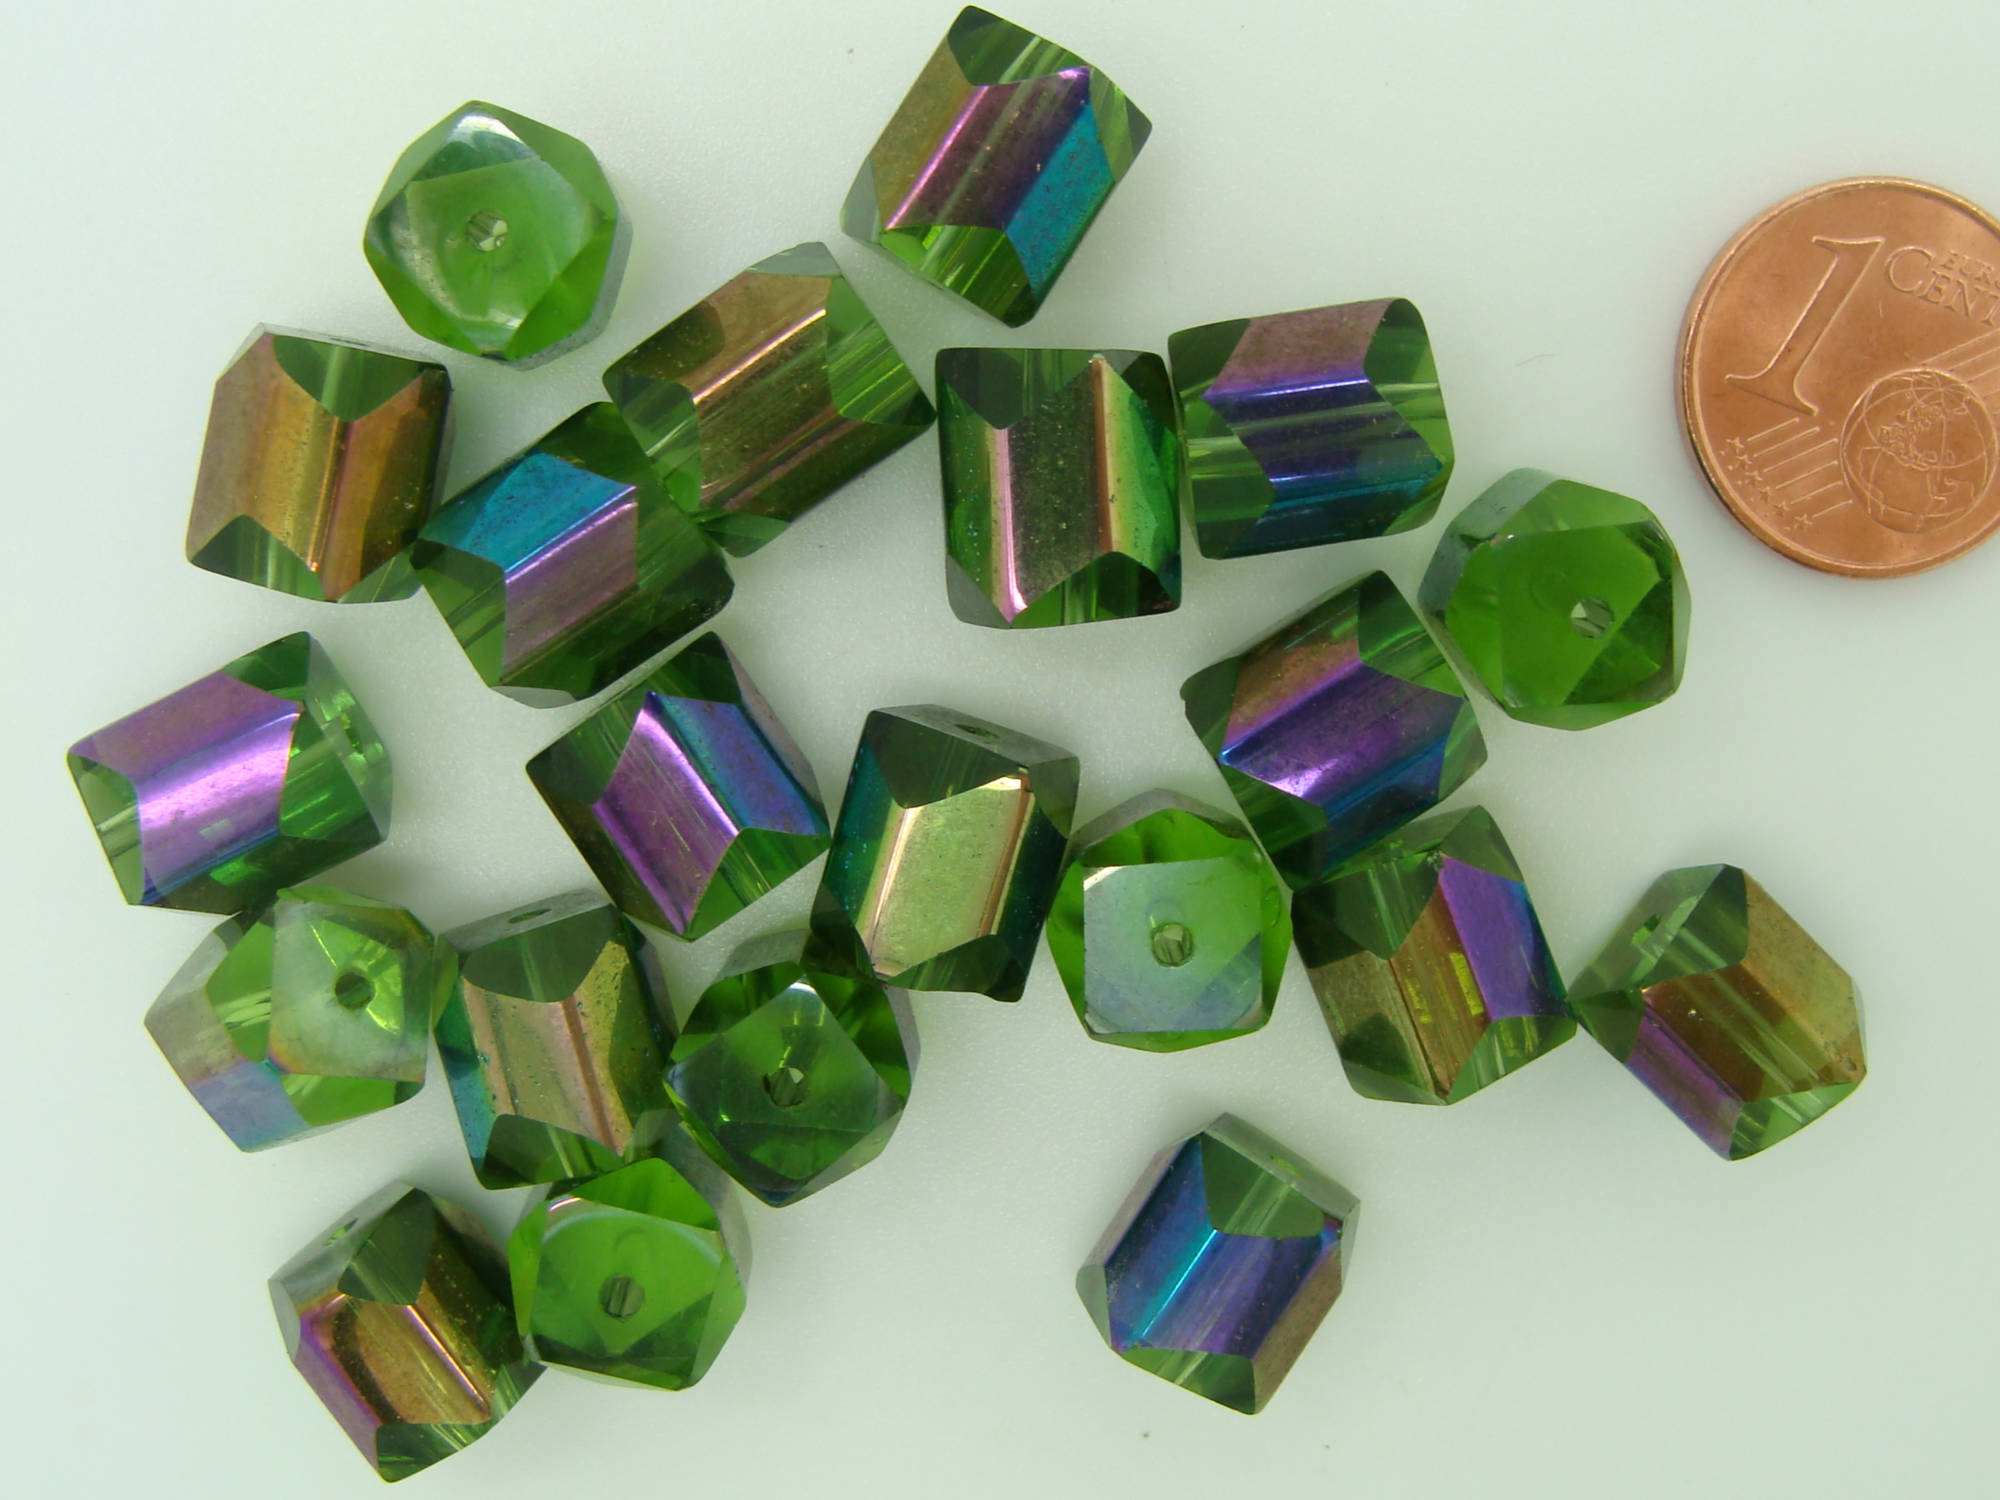 perle verre metallise vert PV40